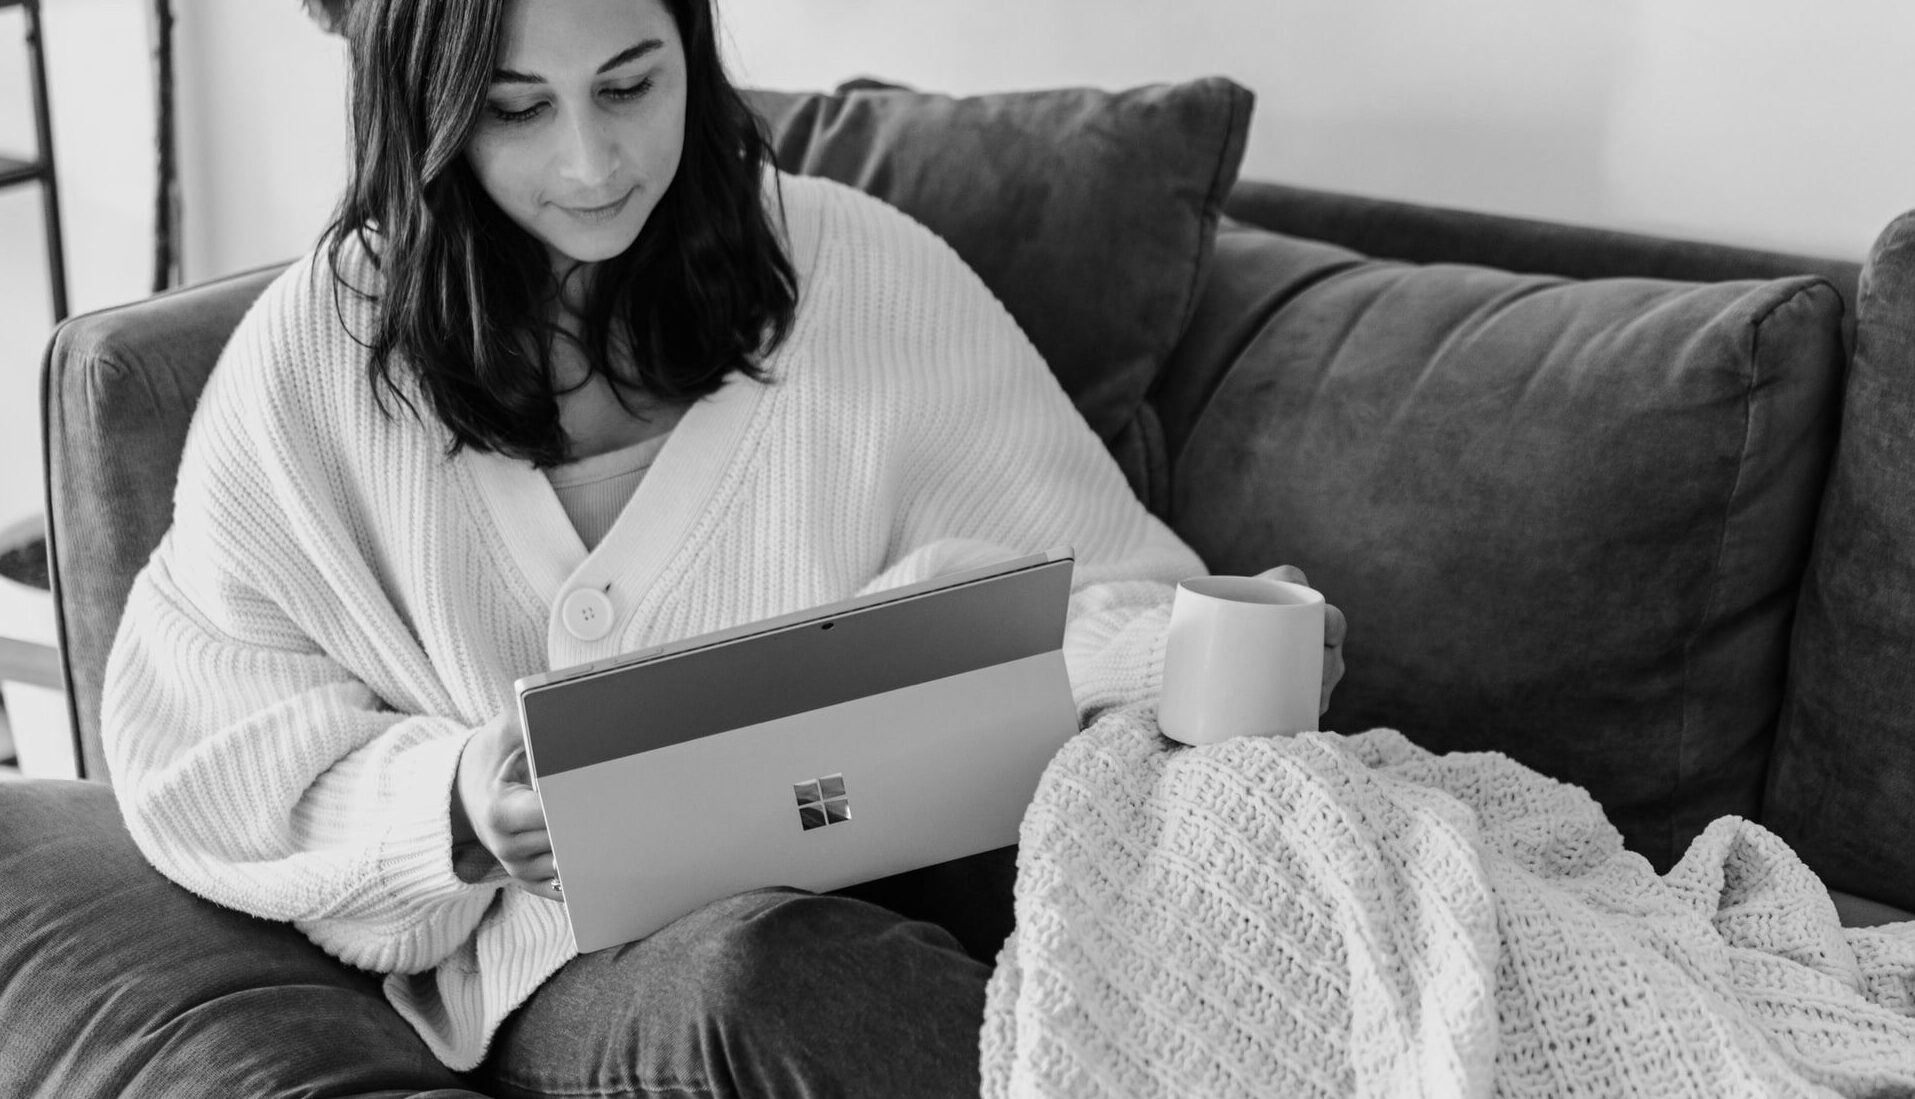 Eine junge Frau im Home Office in Ihrem Wohnzimmer mit Laptop. Das Leben der heutigen Remote Arbeit. Vom Home Office zurück in die Bewegung.